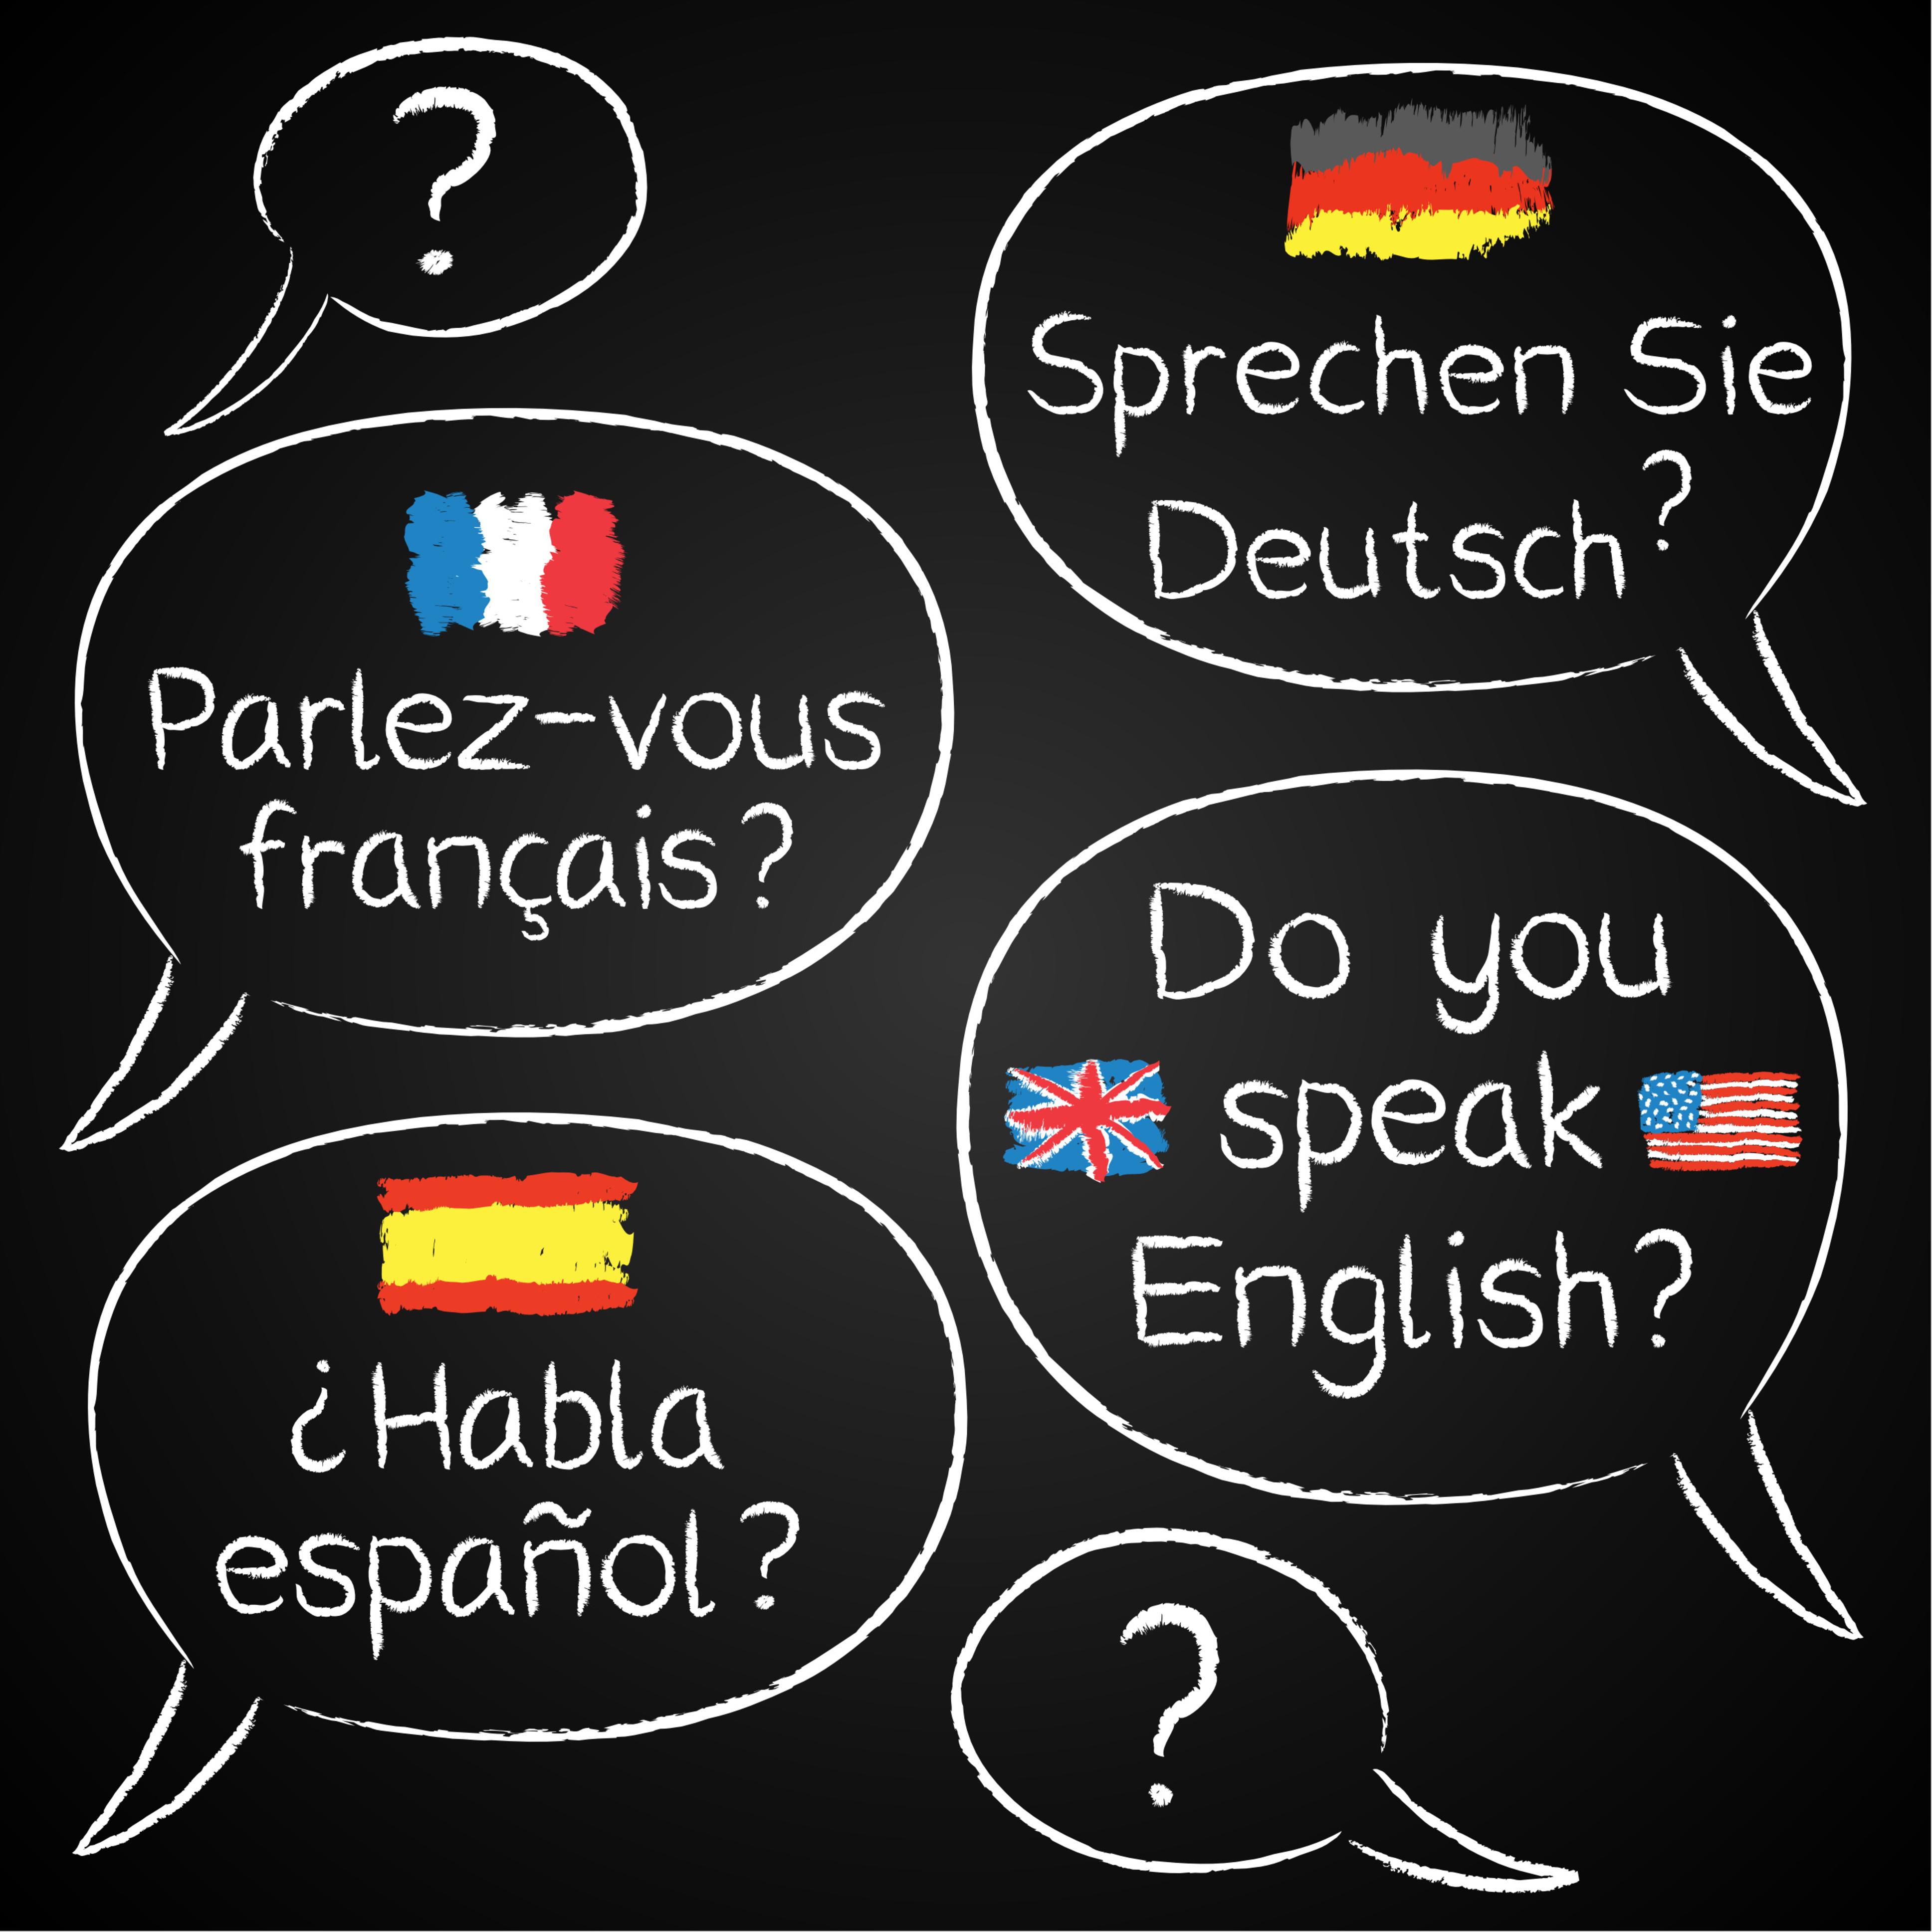 My new language. Иностранные языки. Изучение иностранного языка. Изучать иностранные языки. Шпрехен зи Инглиш.